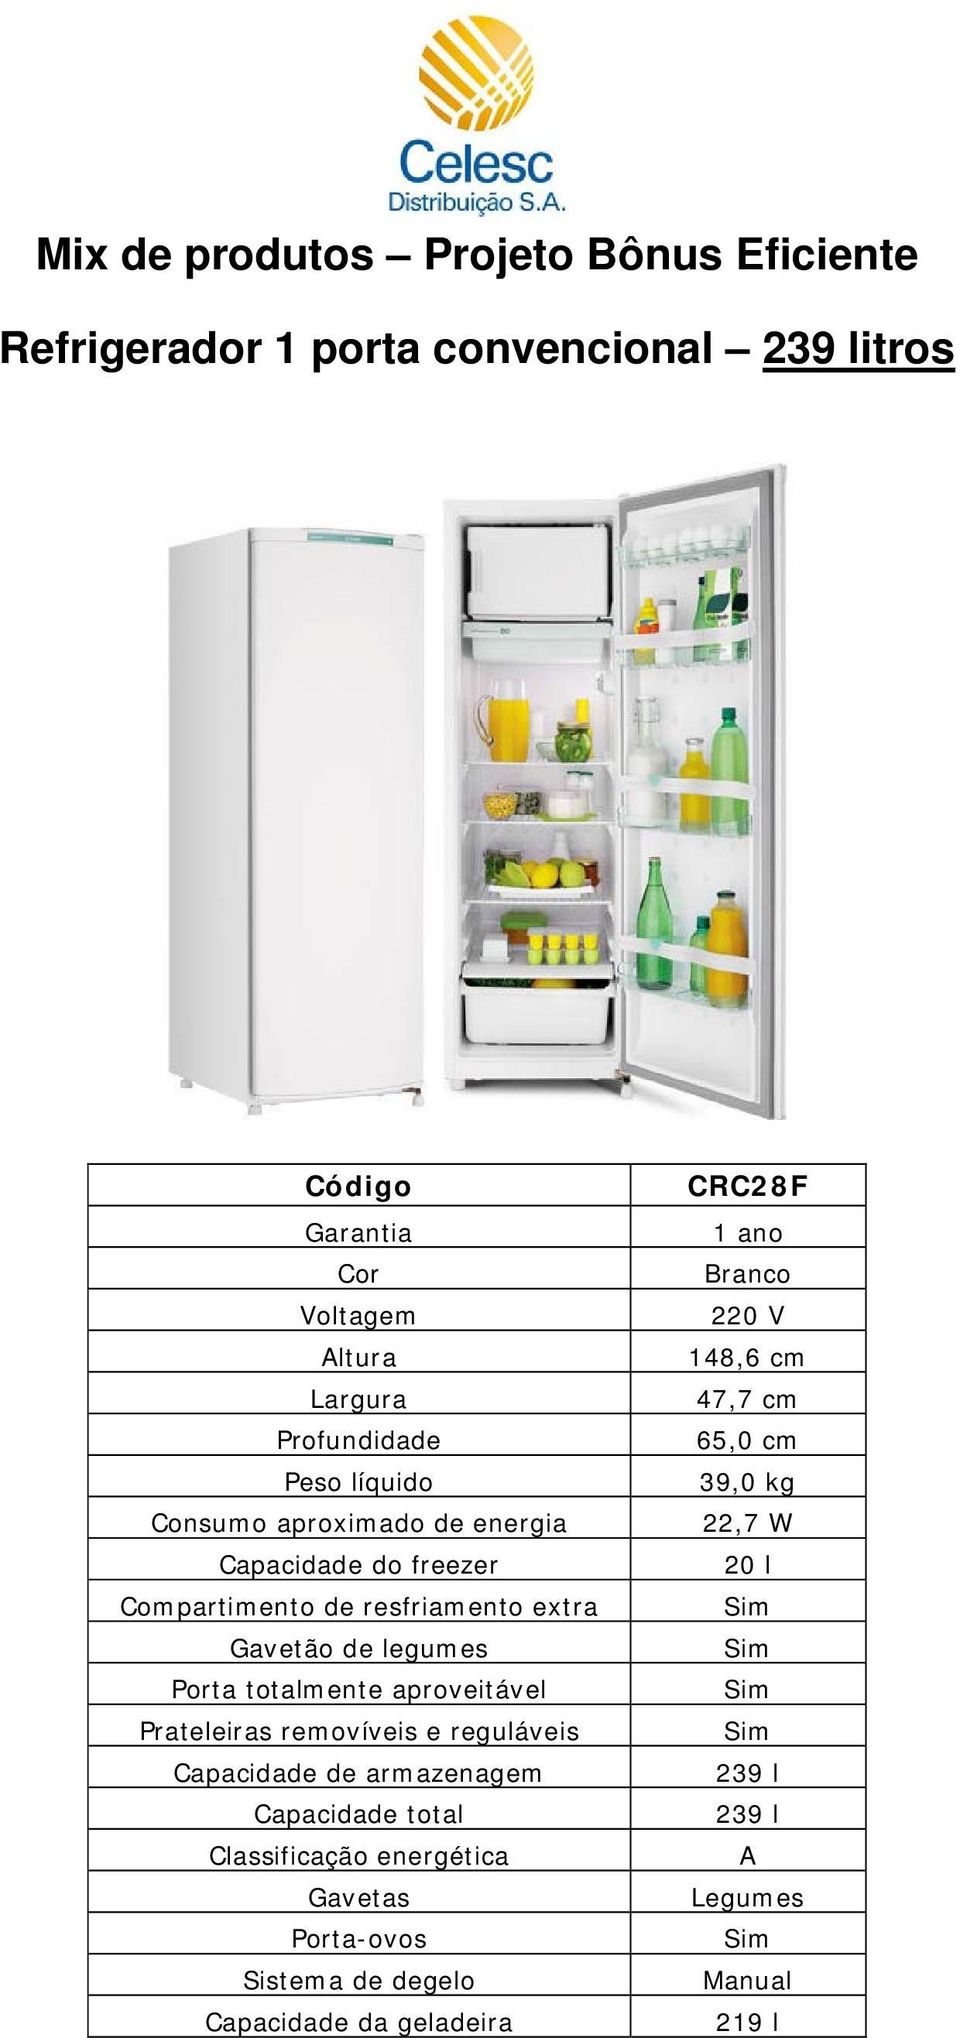 Prateleiras removíveis e reguláveis Capacidade total Porta-ovos CRC28F